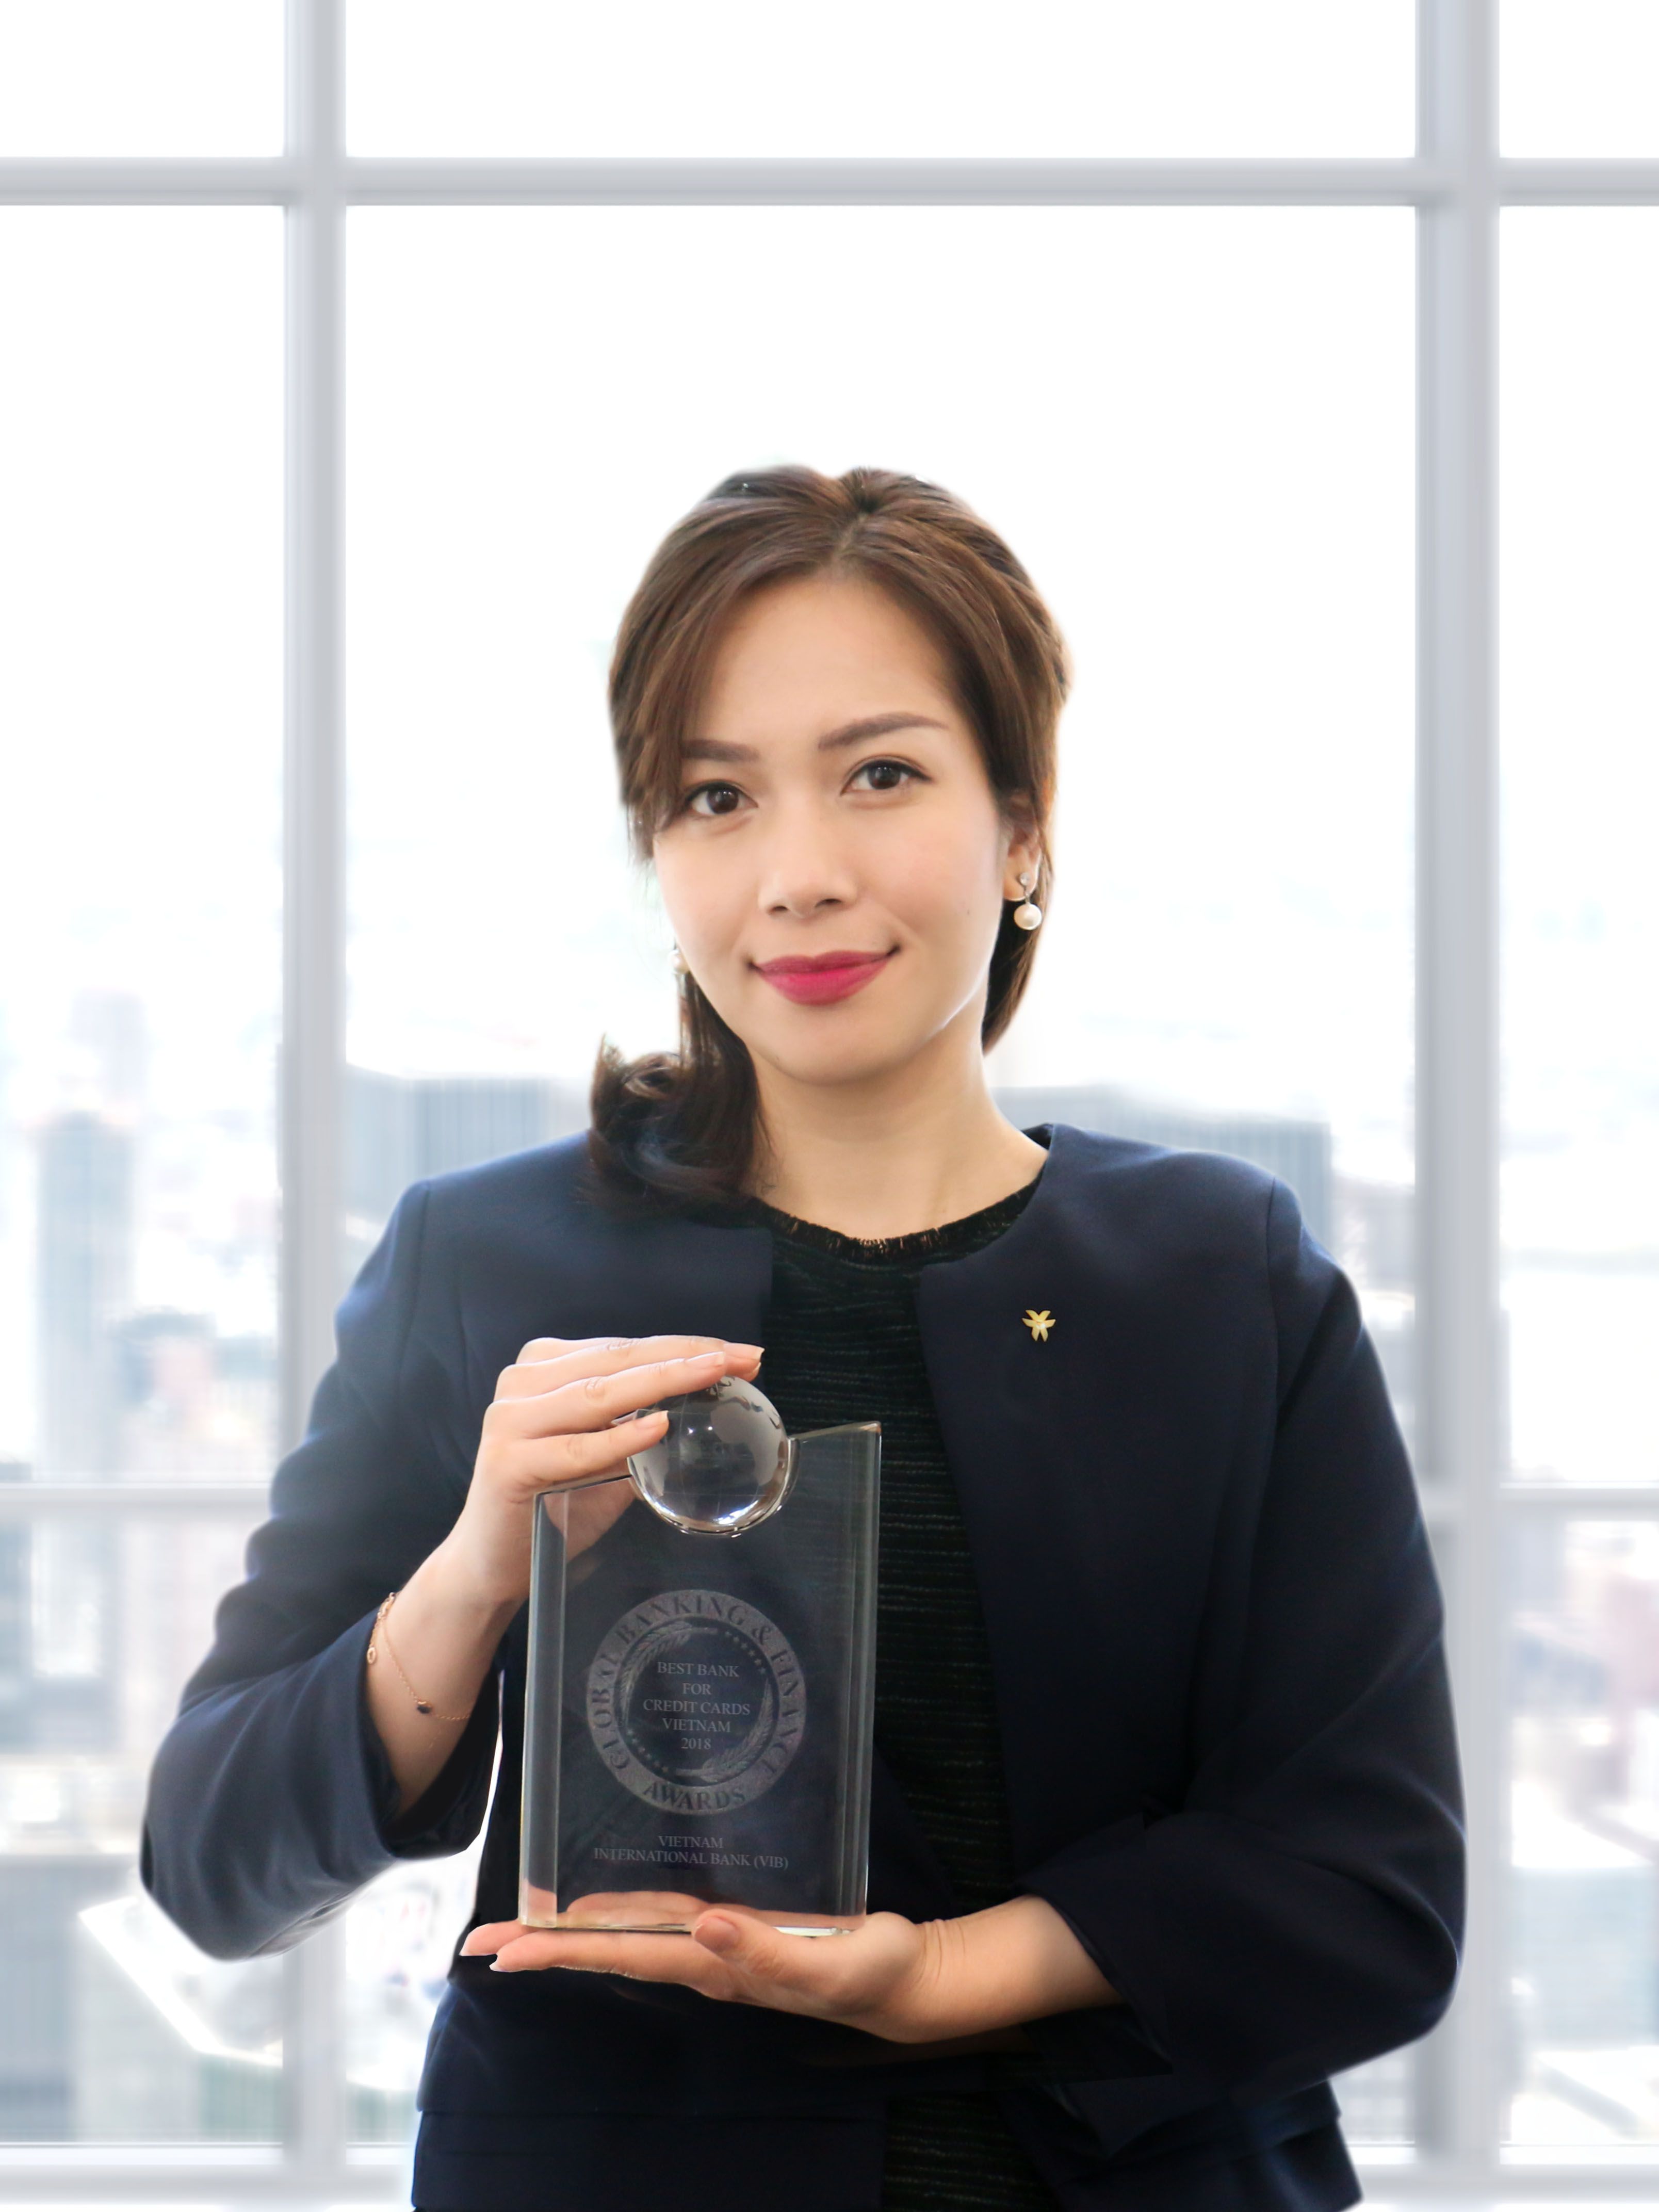 Bà Trần Thu Hương - Giám đốc Chiến lược kiêm Giám đốc Khối Ngân hàng bán lẻ của VIB nhận giải thưởng từ GBAF